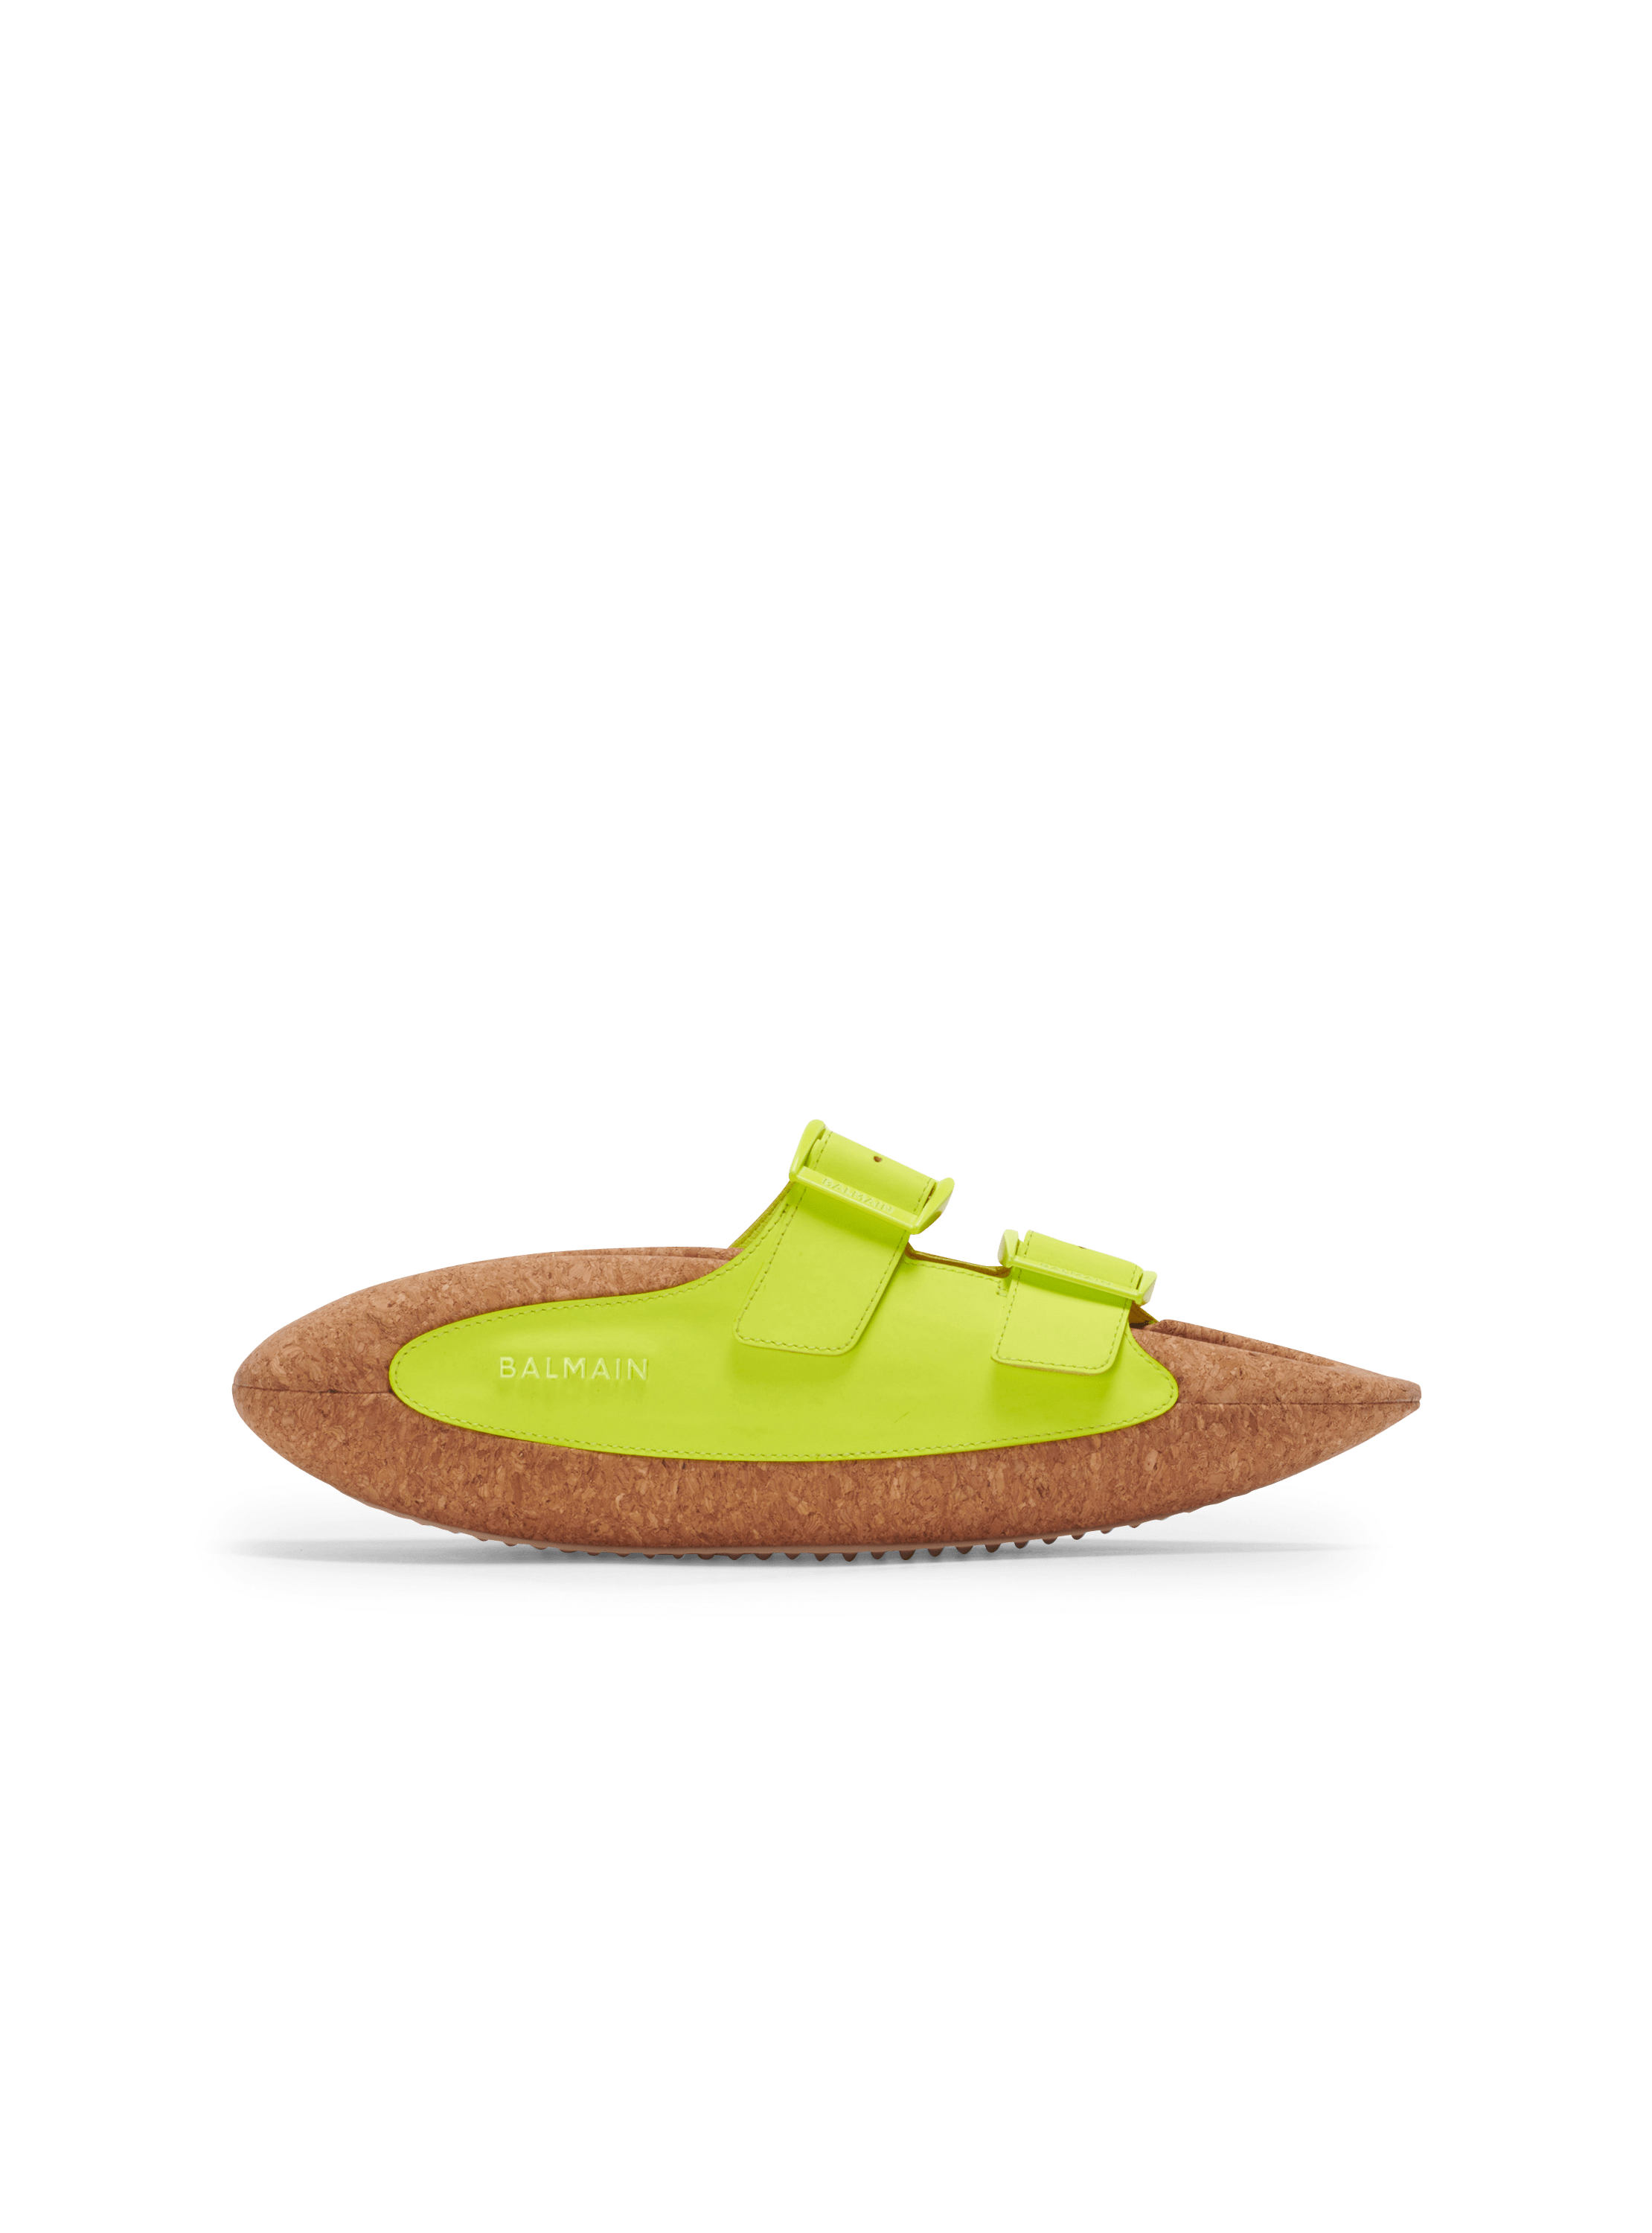 Summer Essentials: Balmain's Cork Sandal Collection - Shoe Effect